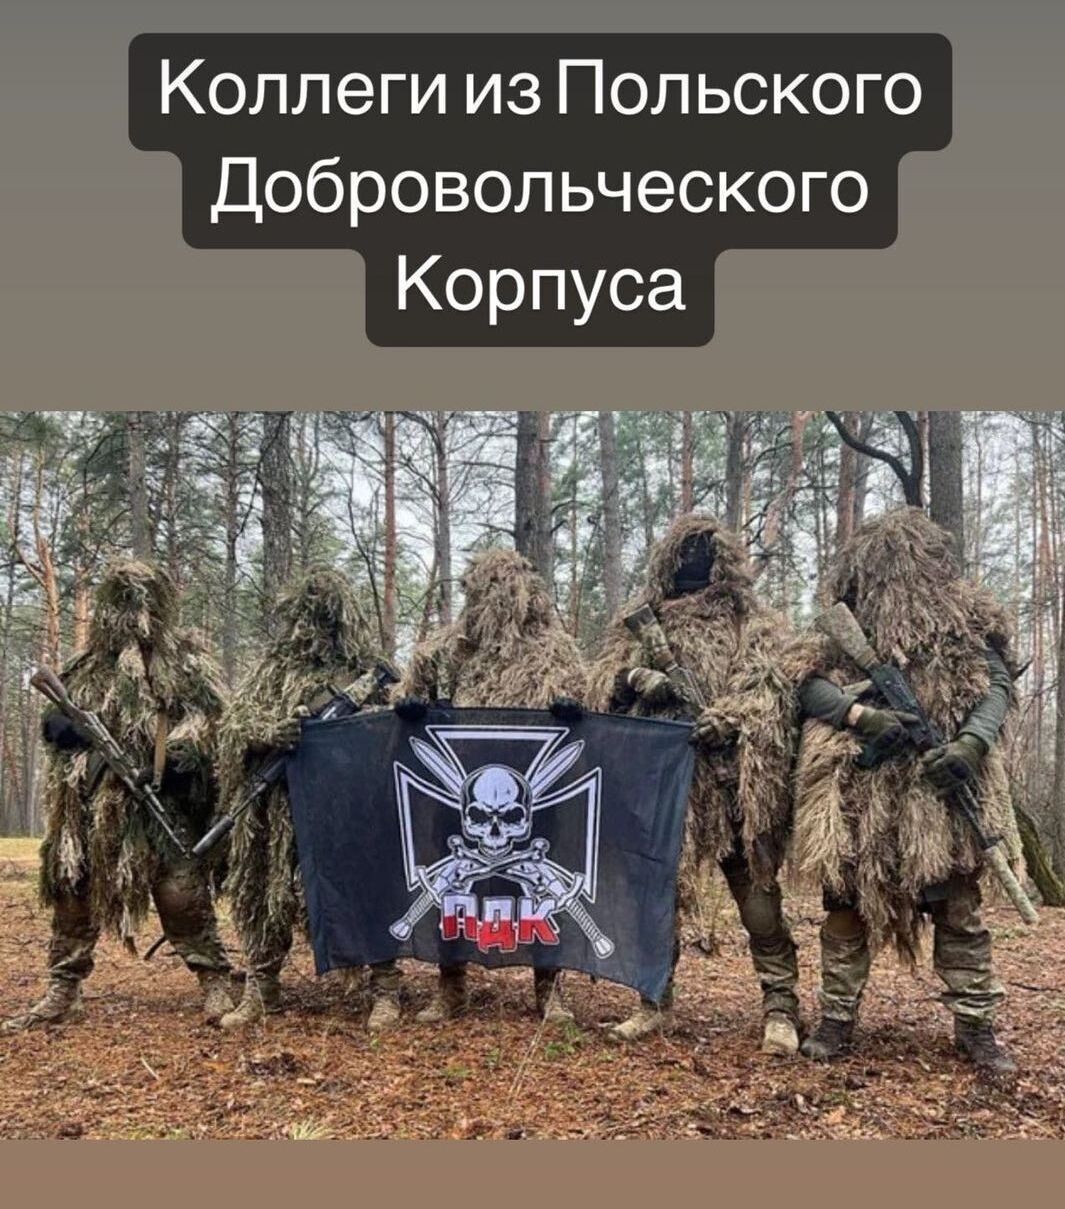 Польские добровольцы заявили о помощи "РДК" в ходе боевых действий в России. Фото и видео